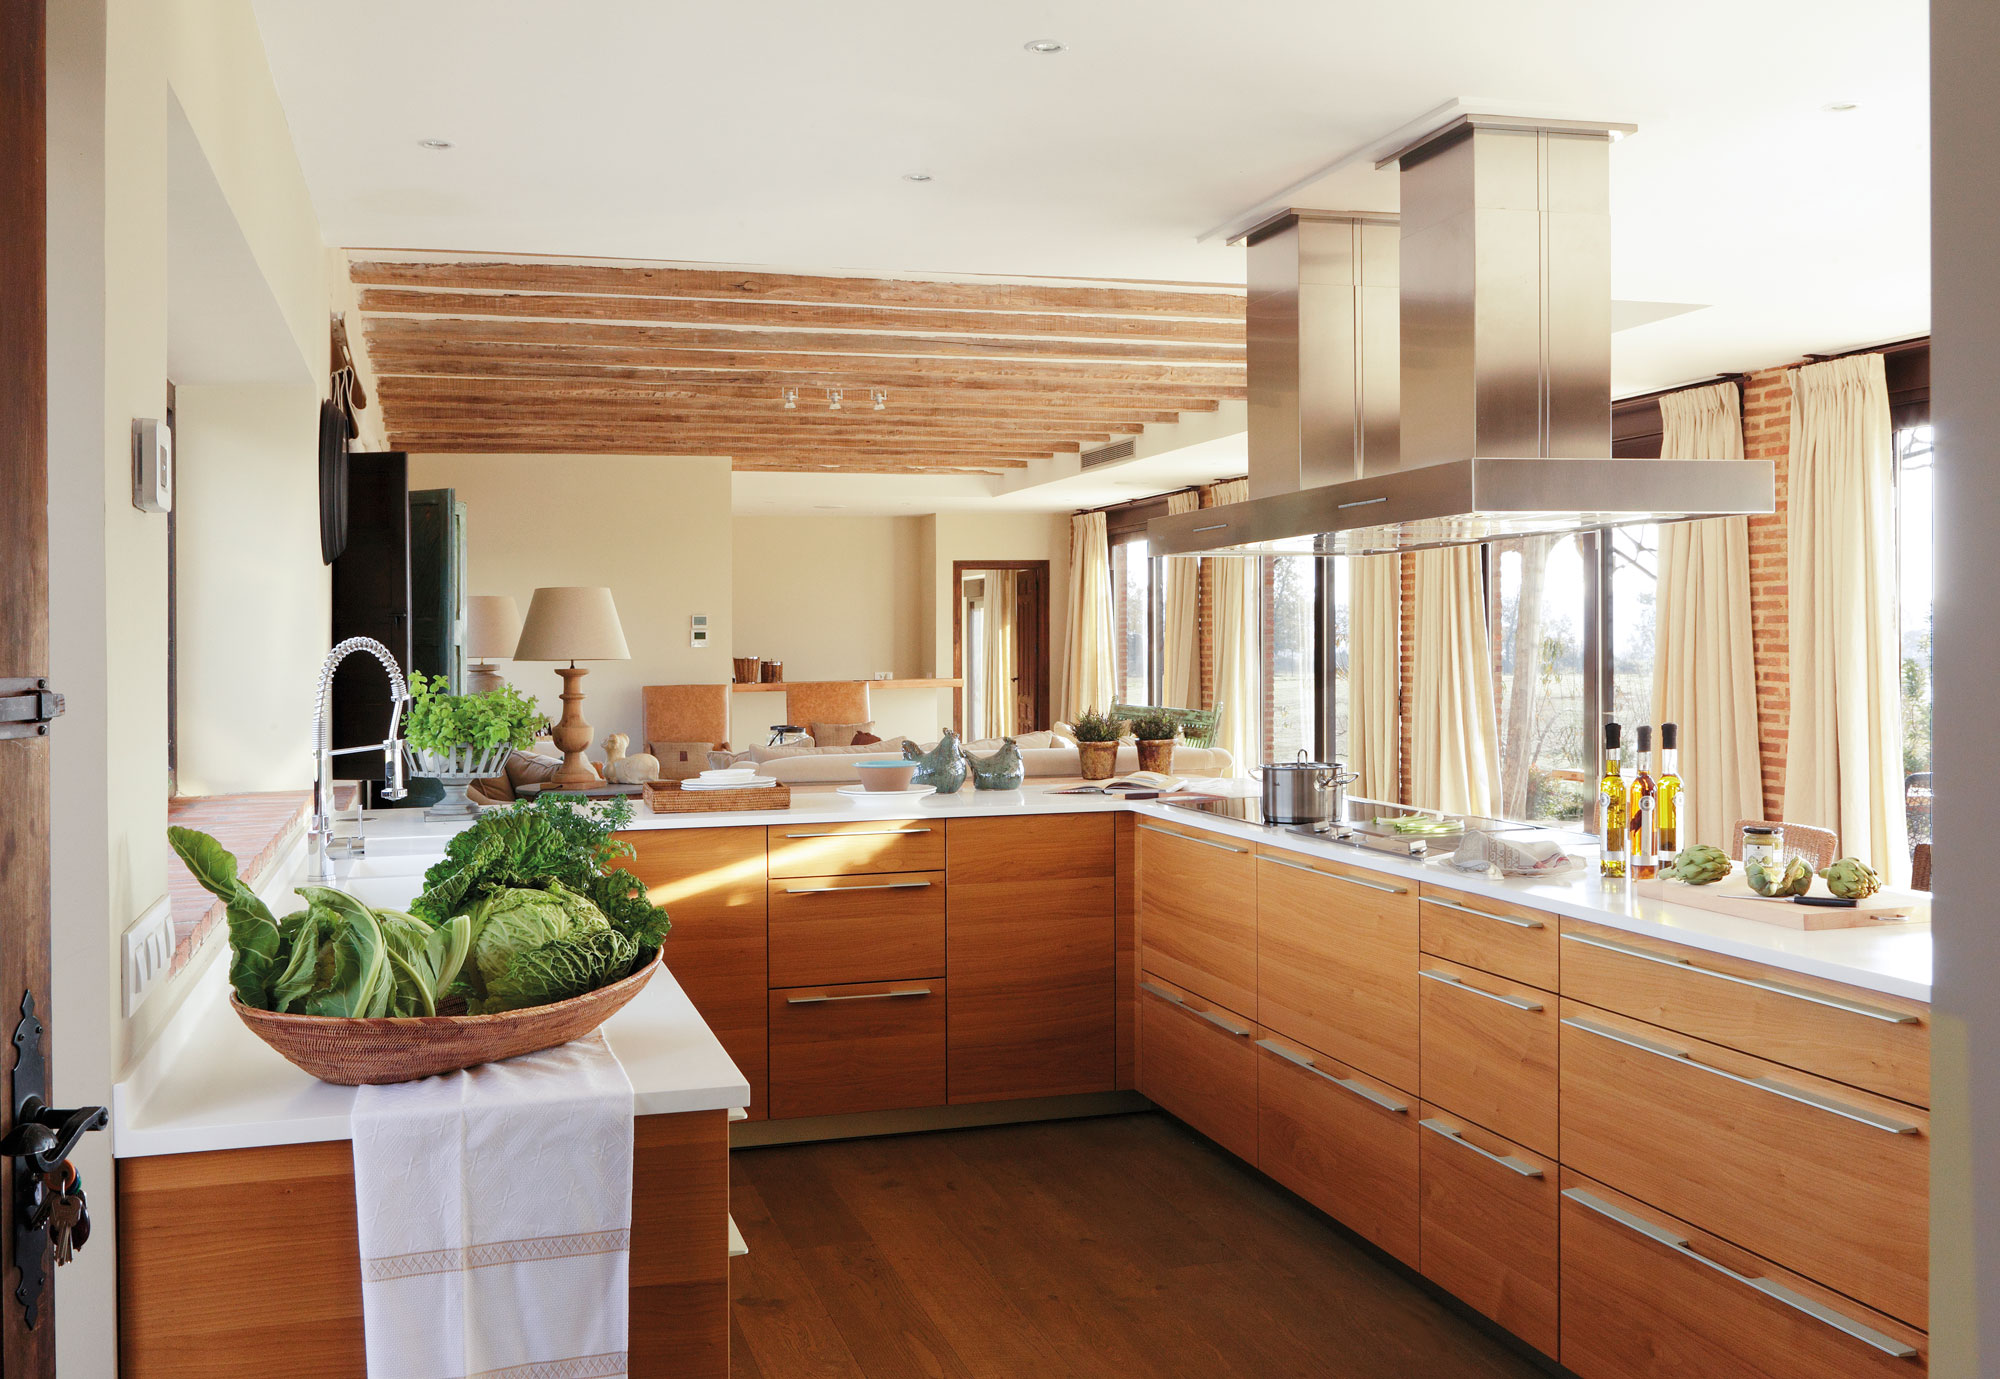 Cómo integrar la madera en la decoración de una cocina moderna